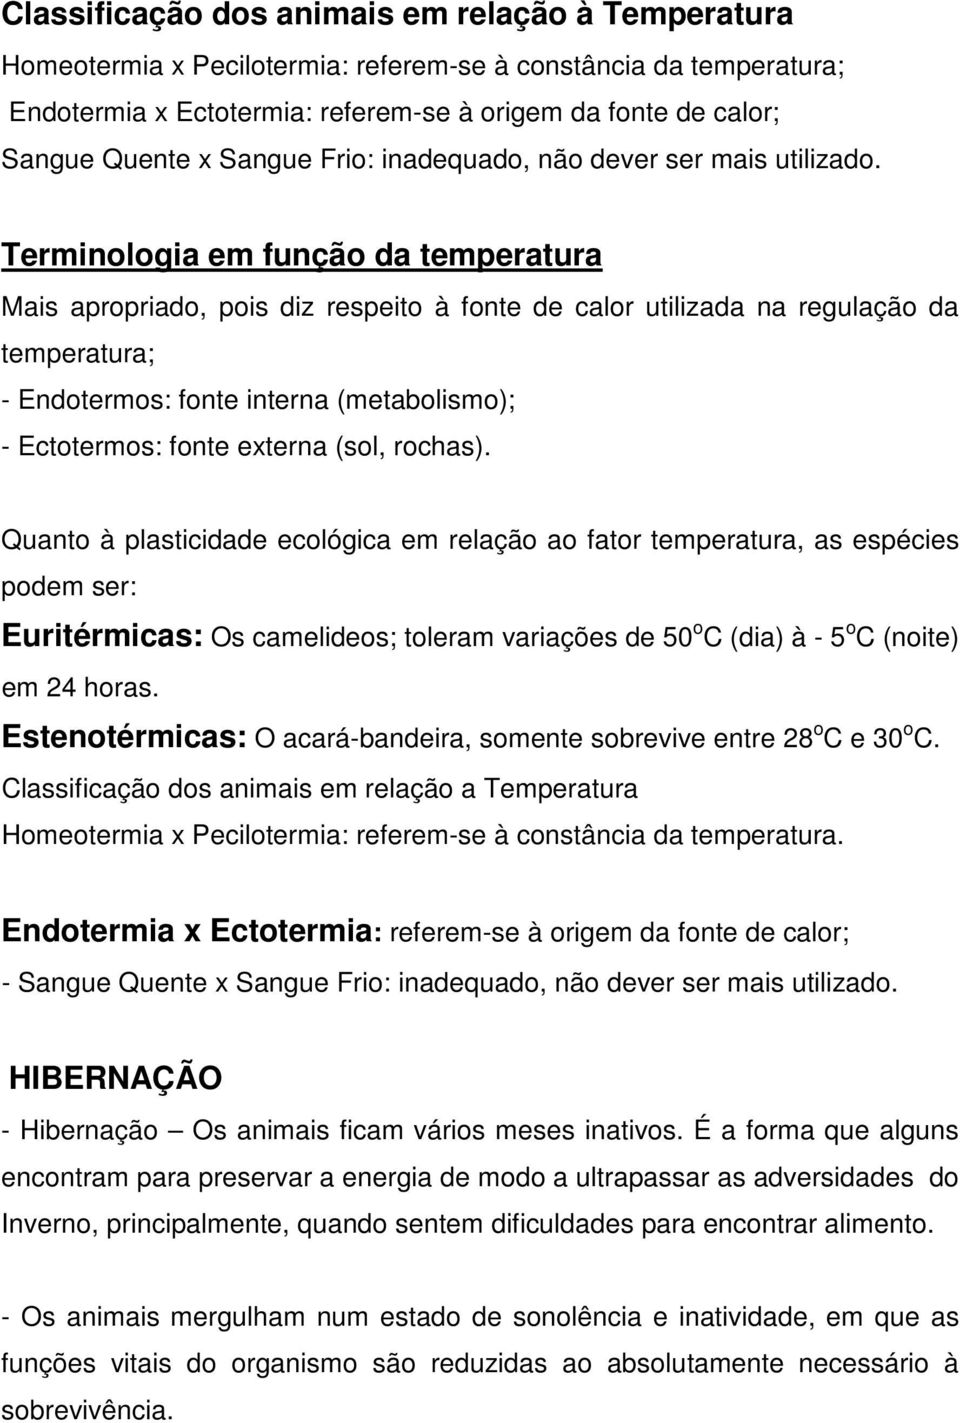 Terminologia em função da temperatura Mais apropriado, pois diz respeito à fonte de calor utilizada na regulação da temperatura; - Endotermos: fonte interna (metabolismo); - Ectotermos: fonte externa